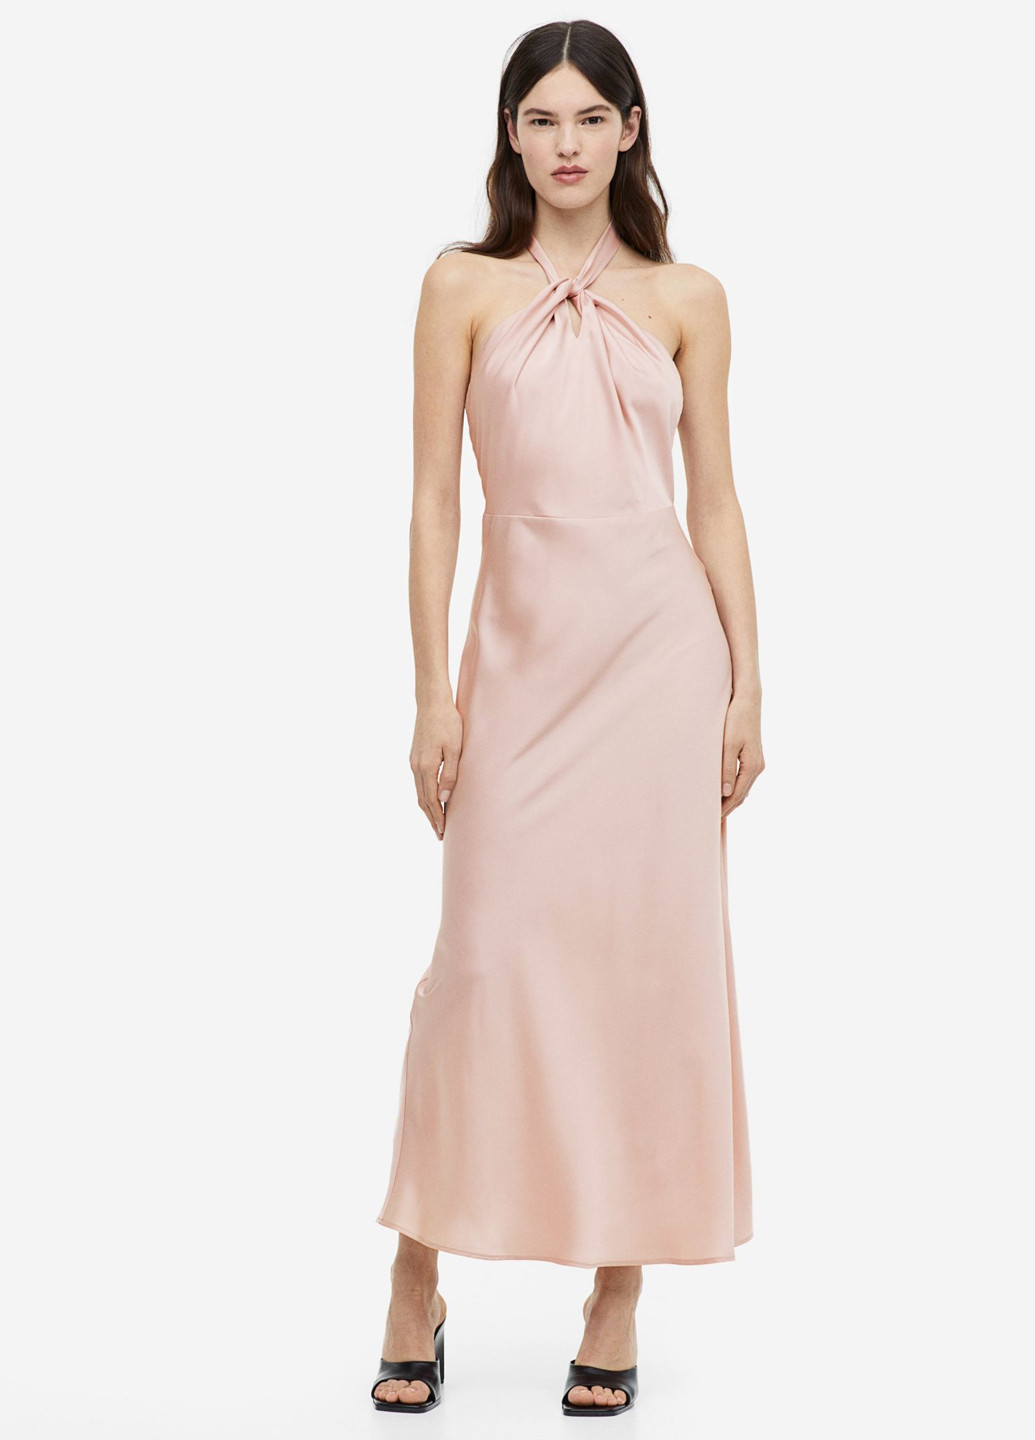 Розовое коктейльное платье с открытой спиной H&M однотонное